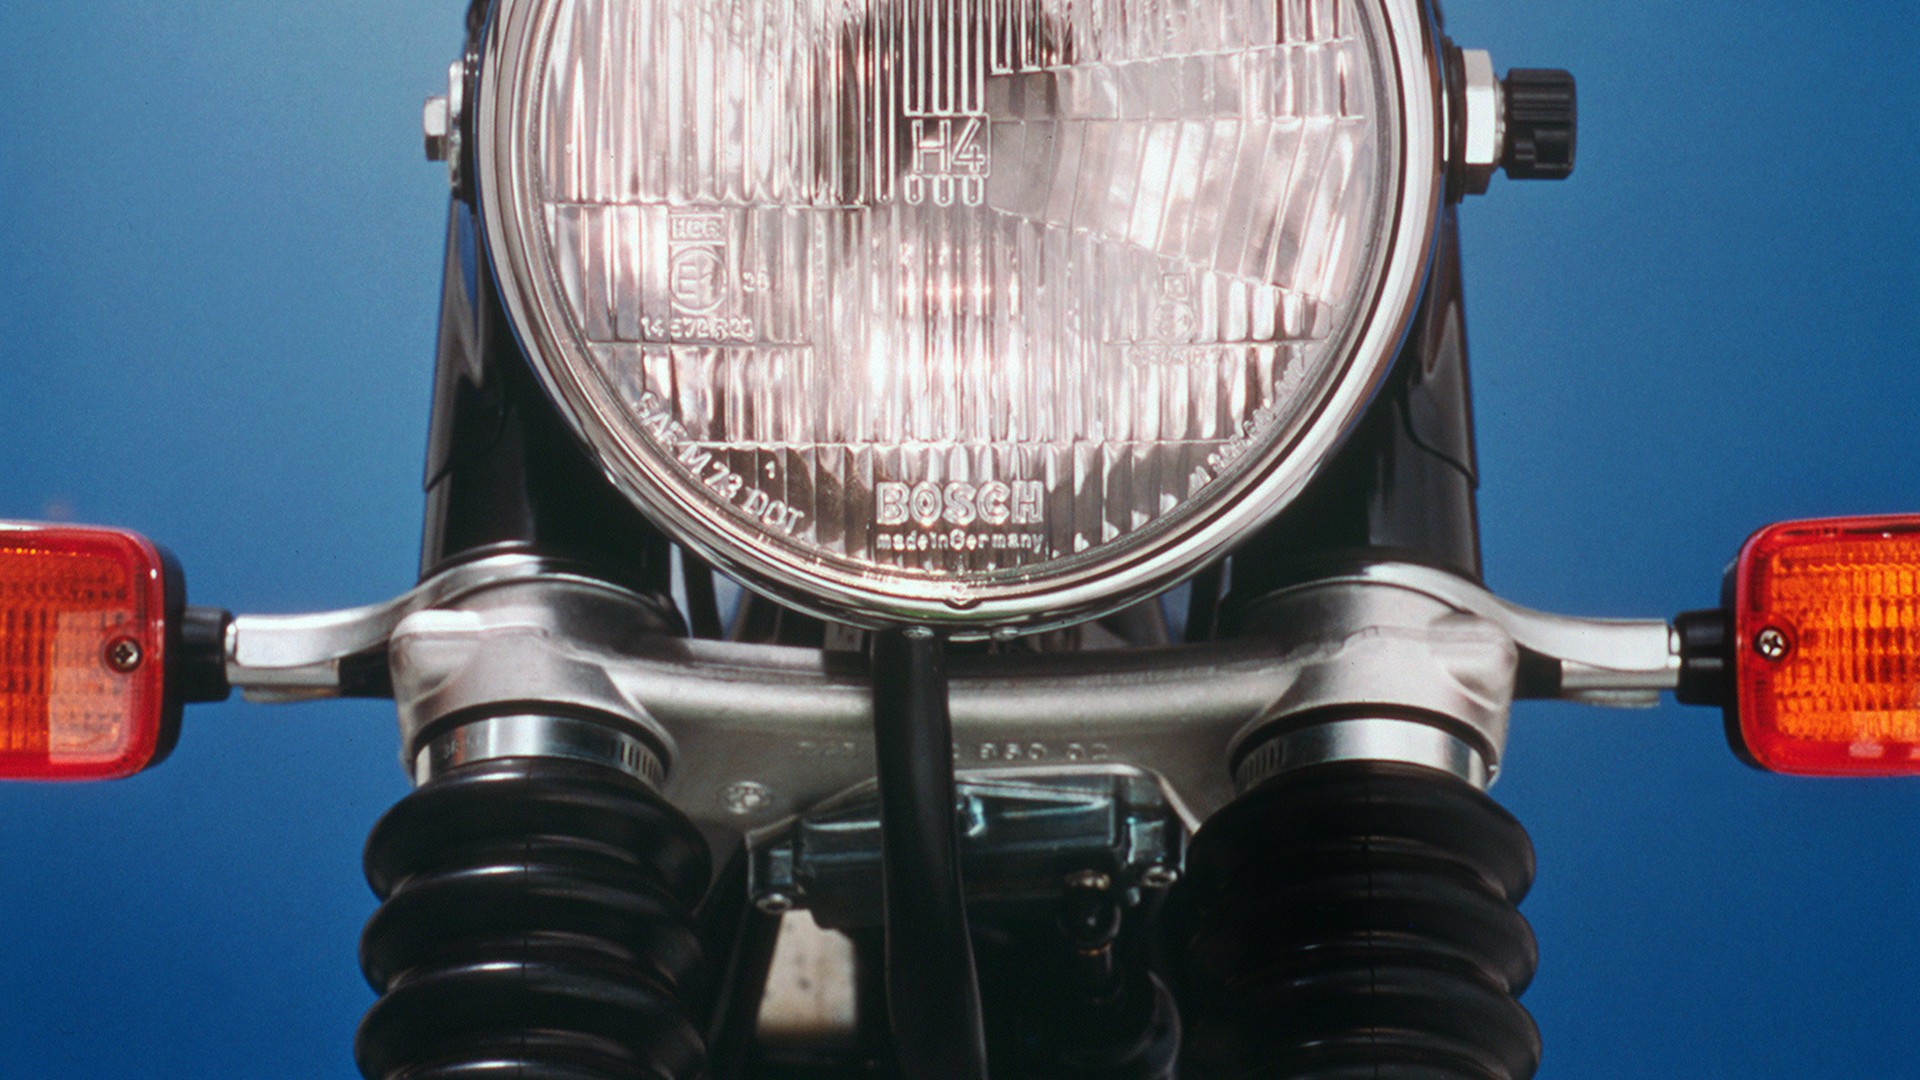 1977 рік - перша система попереджувальних сигналів для мотоциклів